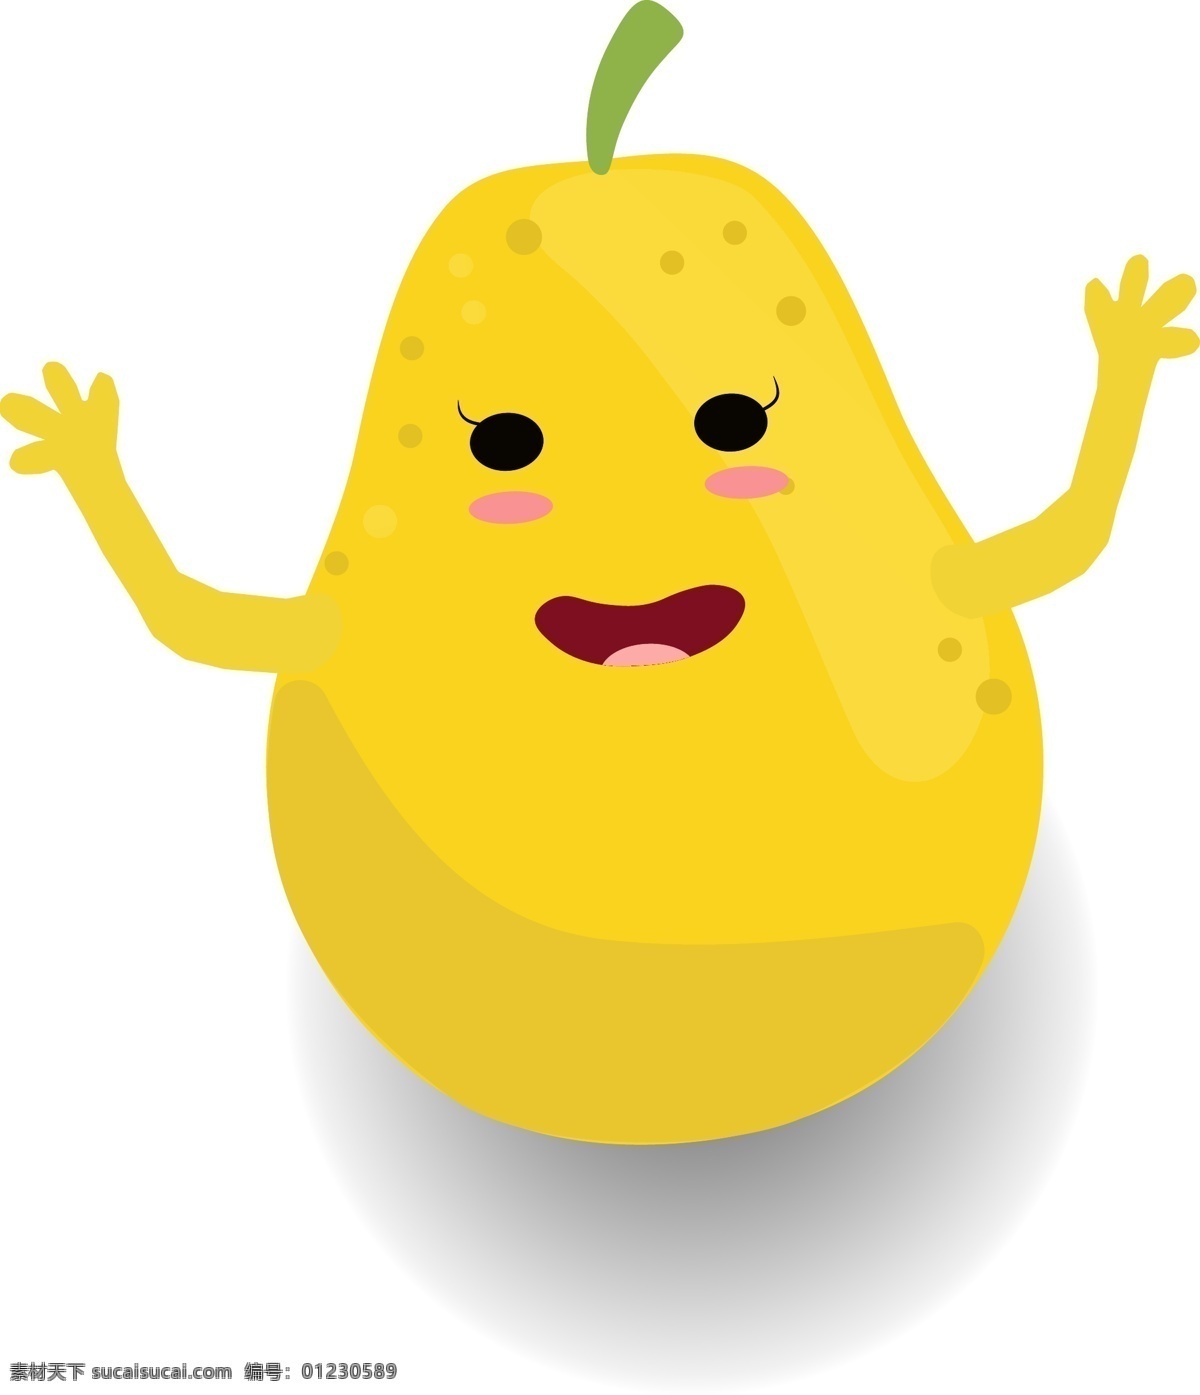 小 清新 可爱 水果 卡通 形象 梨 鸭梨 香梨 黄梨 矢量 黄色 食物 卡通梨 卡通水果 水果小人 梨小人 果盒包装 食物素材 水果素材 水果卡通形象